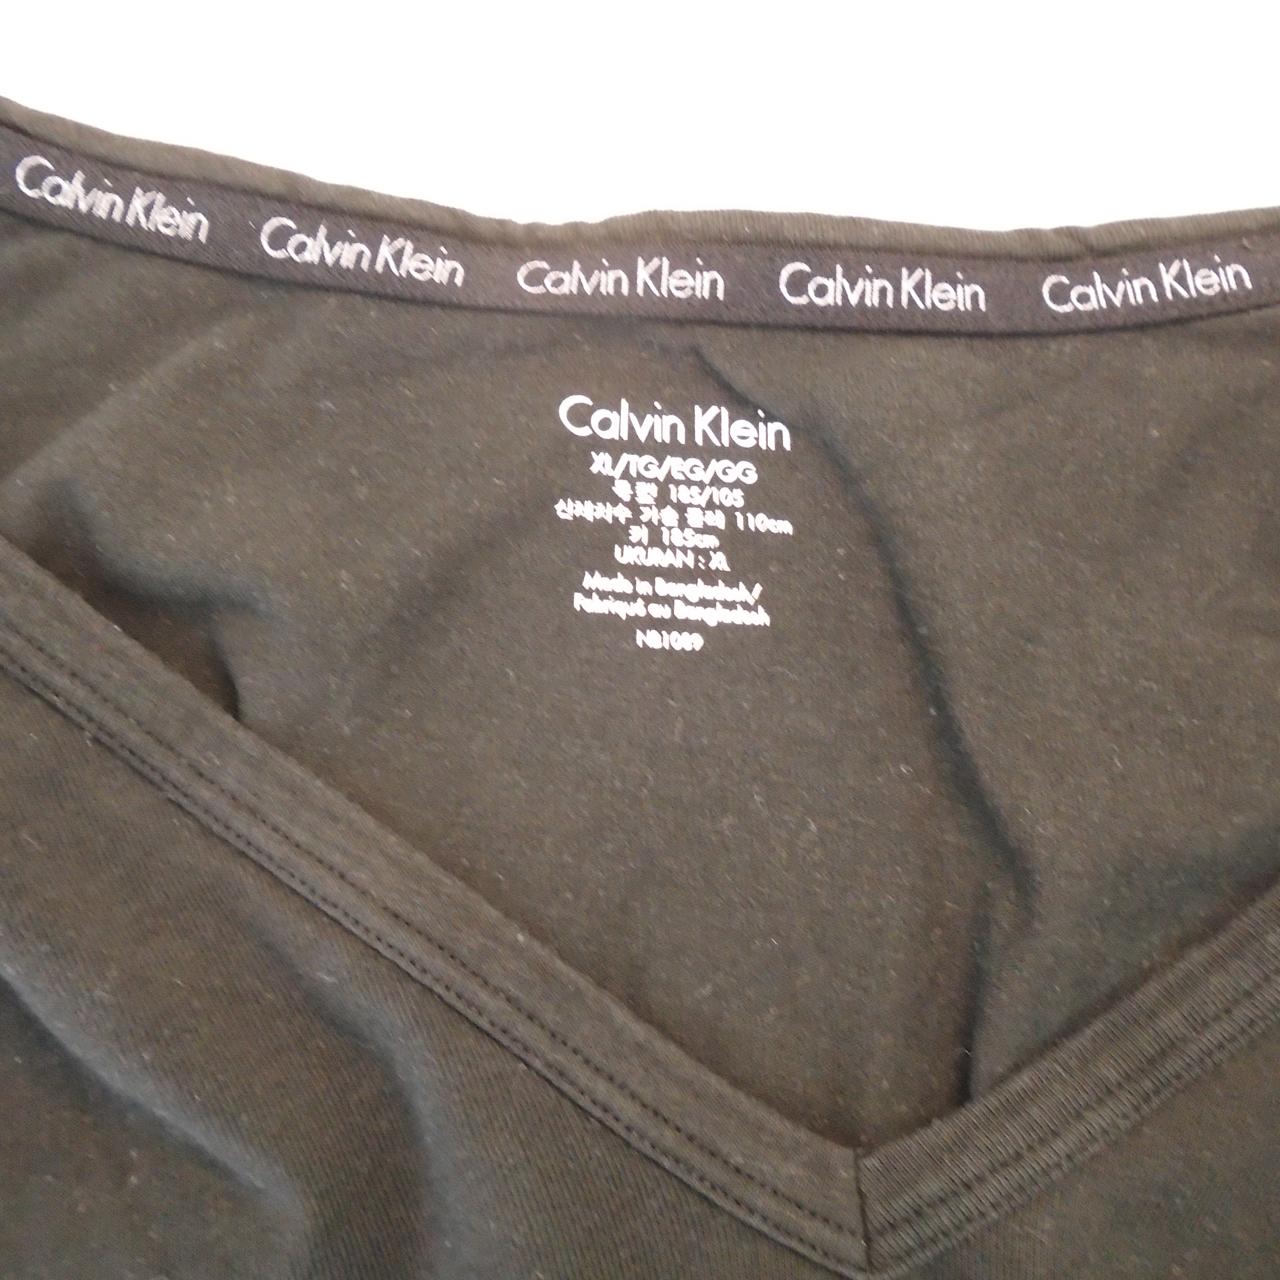 Herren-T-Shirt Calvin Klein. Schwarz. XL. Gebraucht. Gut